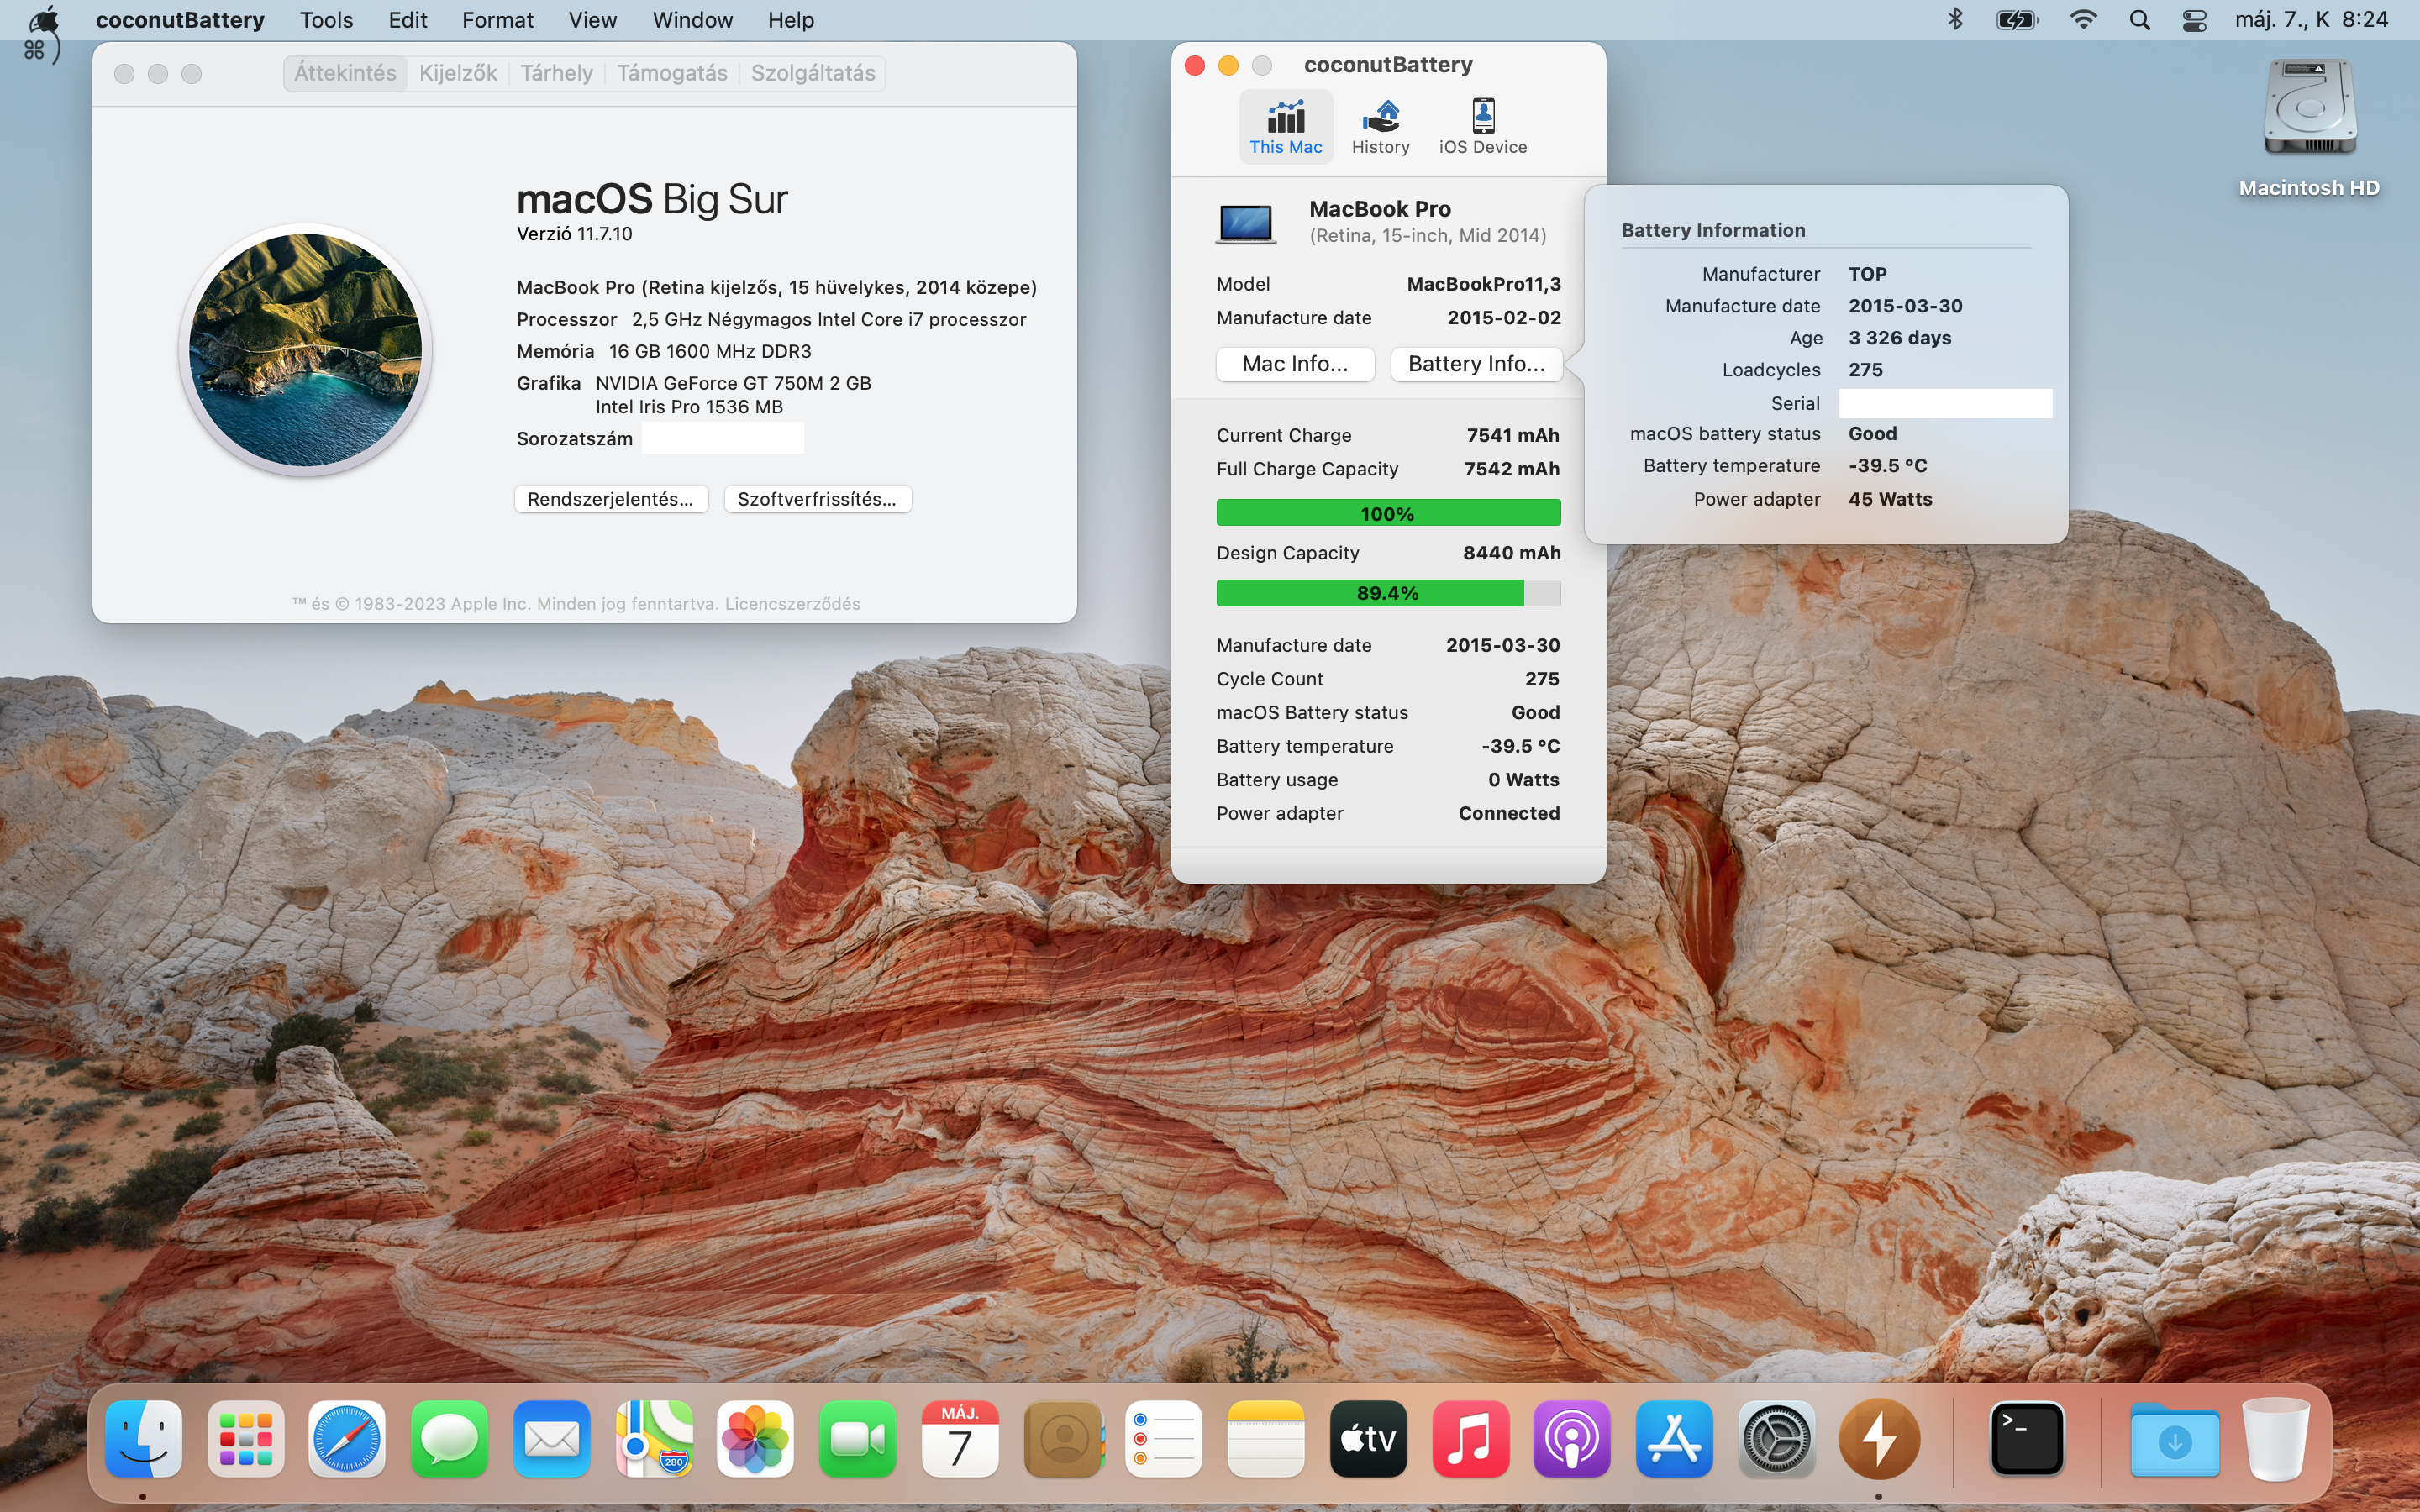 MacBook Pro (15” retina mid 2014 i7 16GB 512GB SSD)